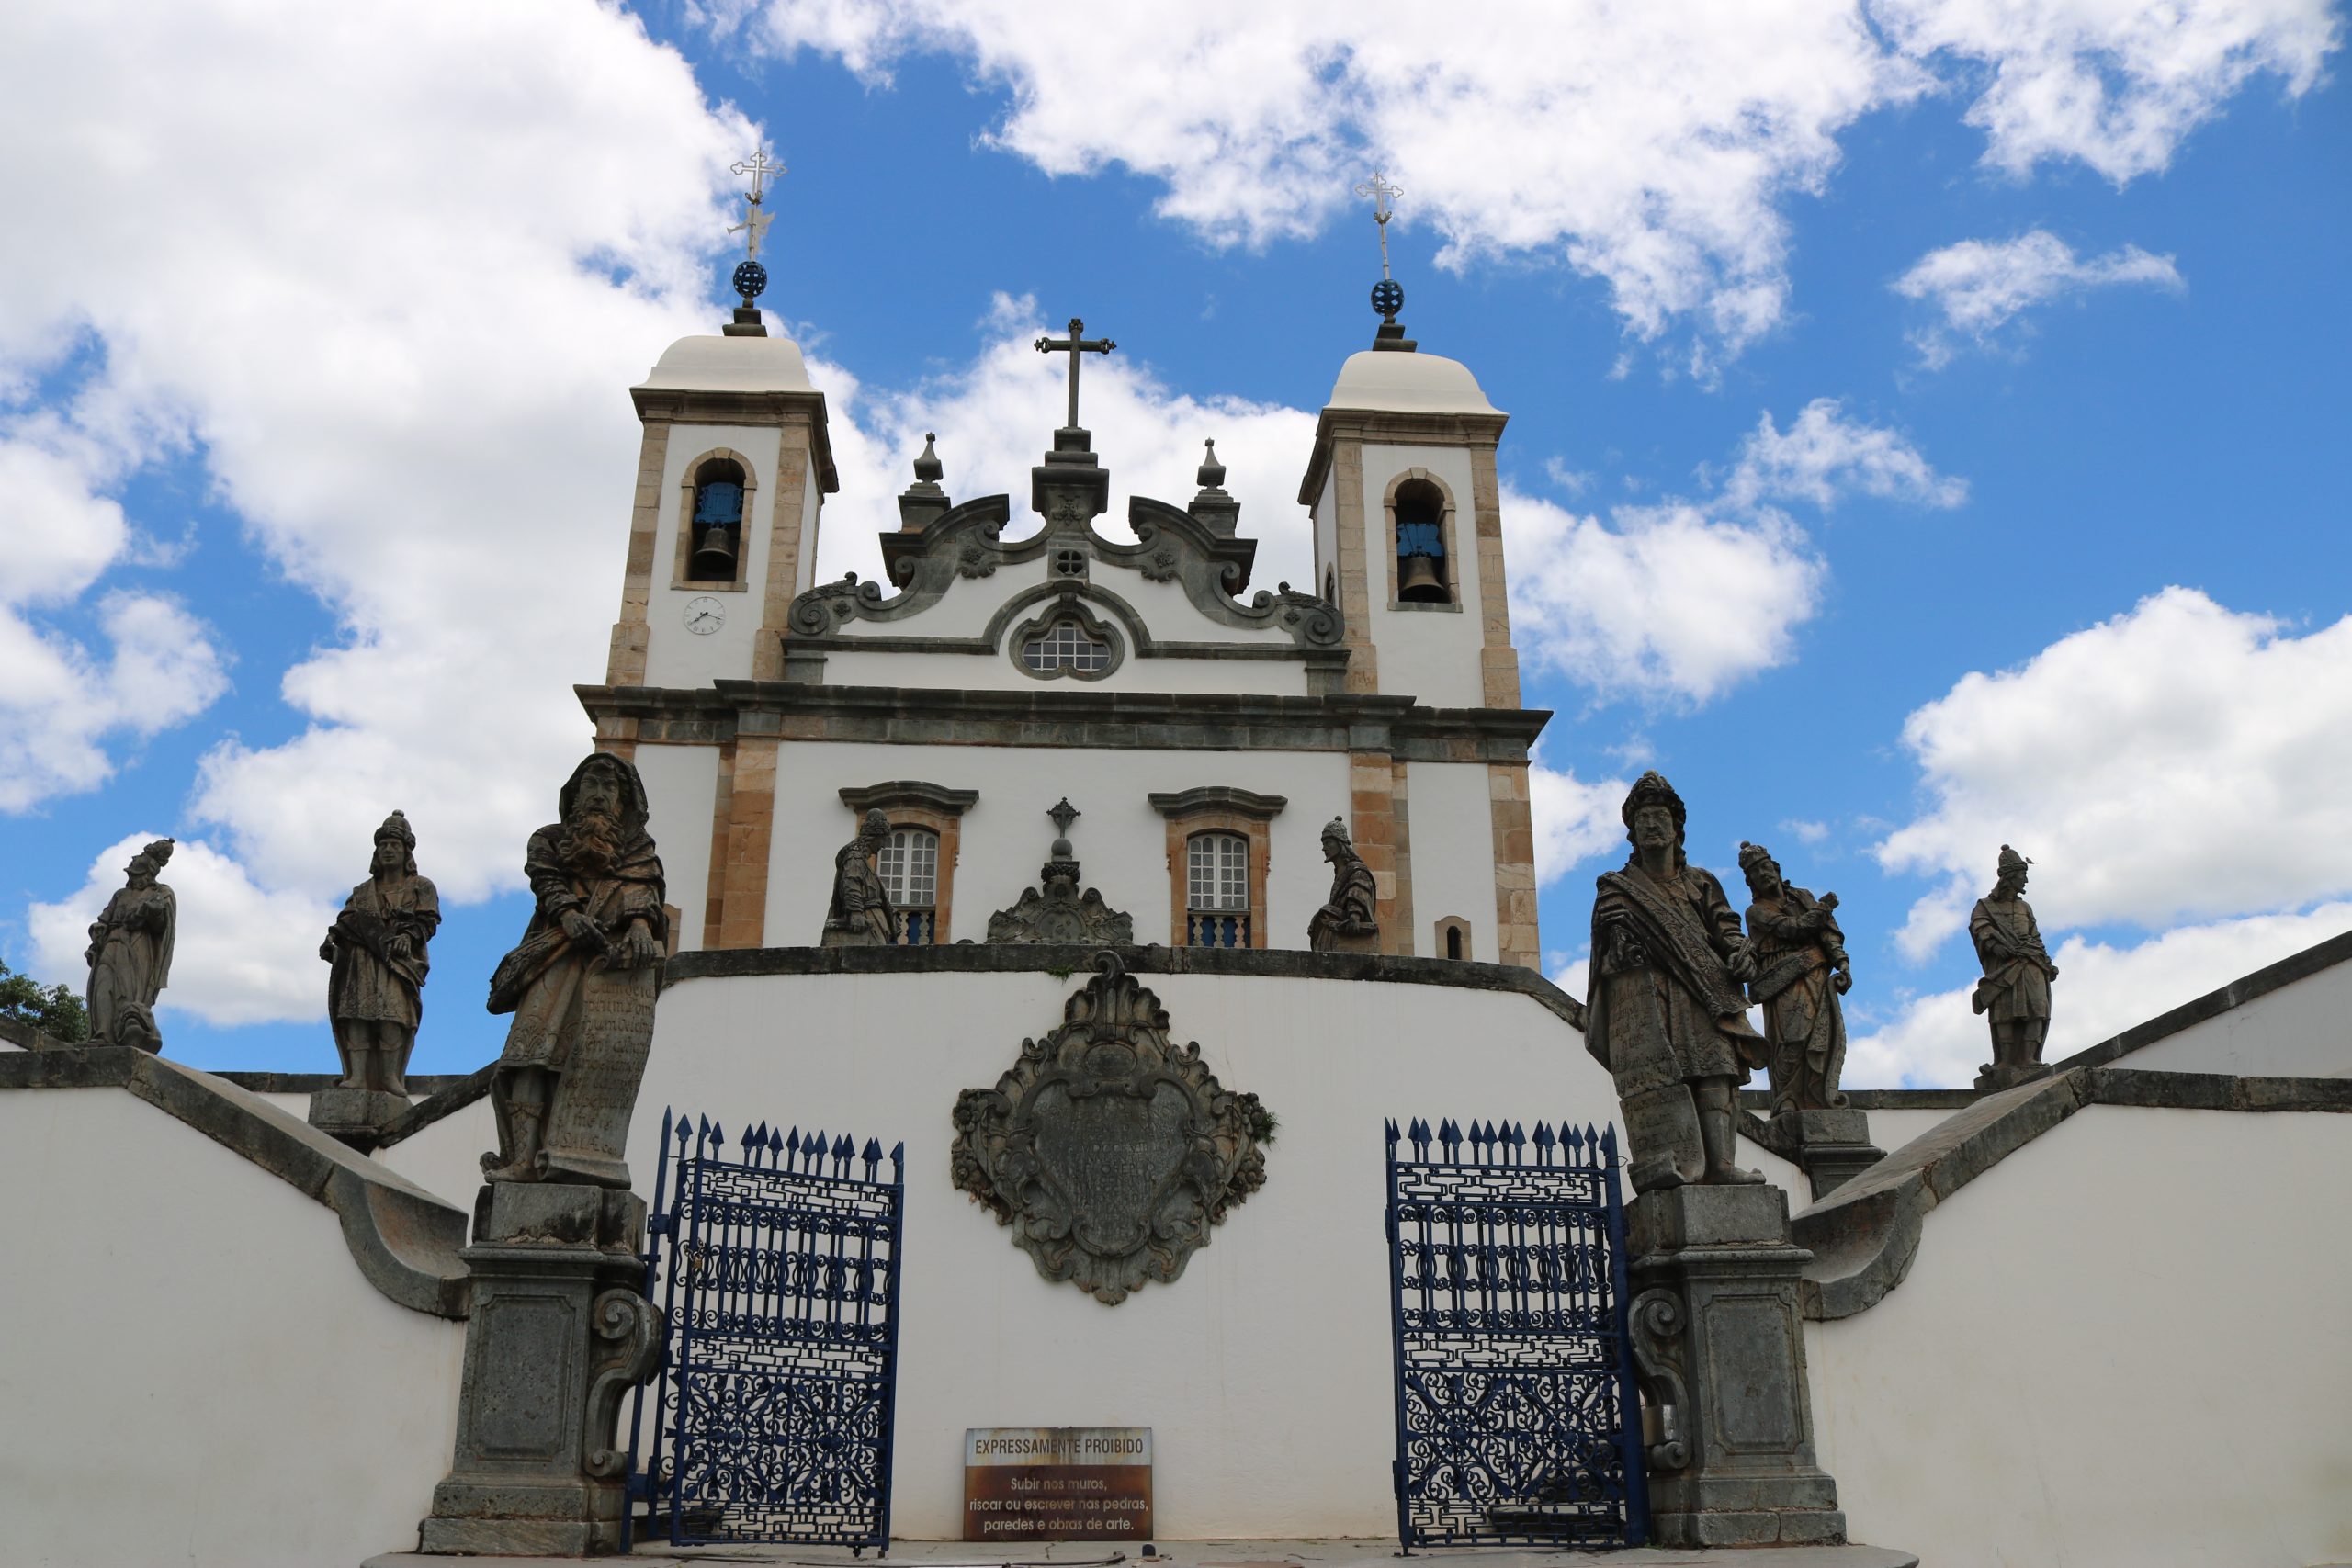 Agência espanhola coloca quatro igrejas mineiras entre as 10 mais belas do Brasil